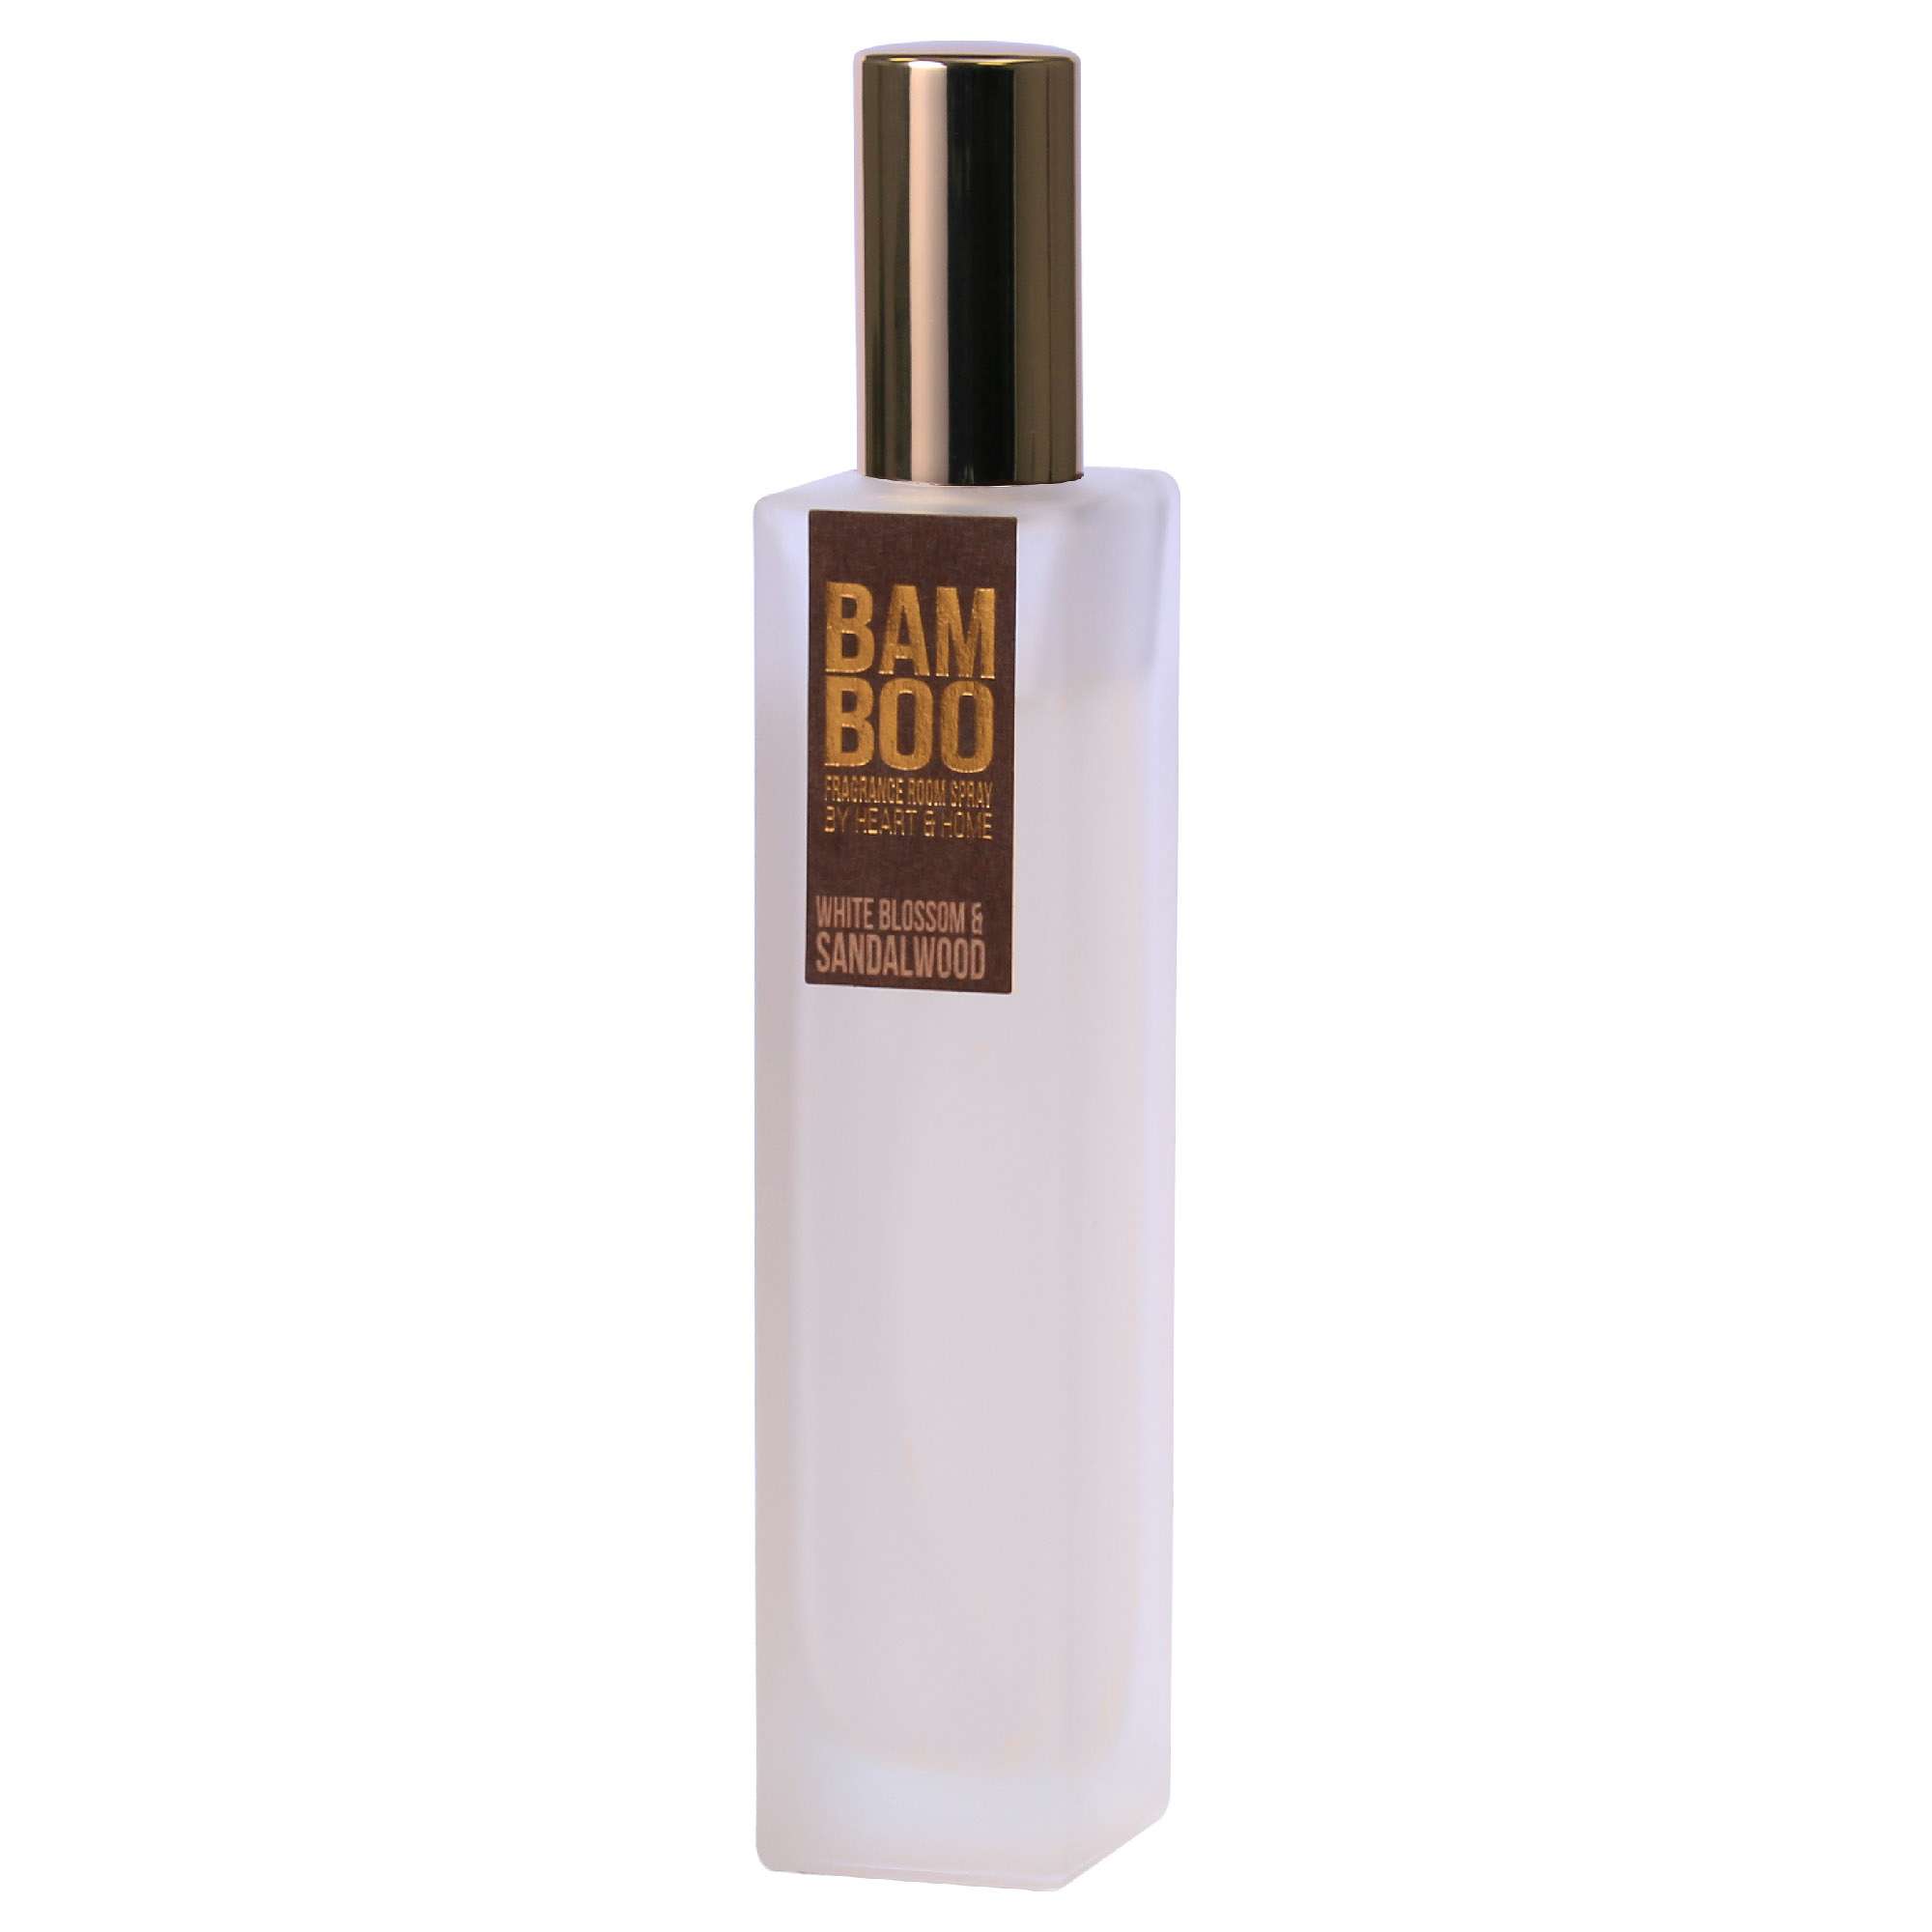 BAMBOO Room Spray Fragrance Spray White Blossom & Sandalwood 90ml